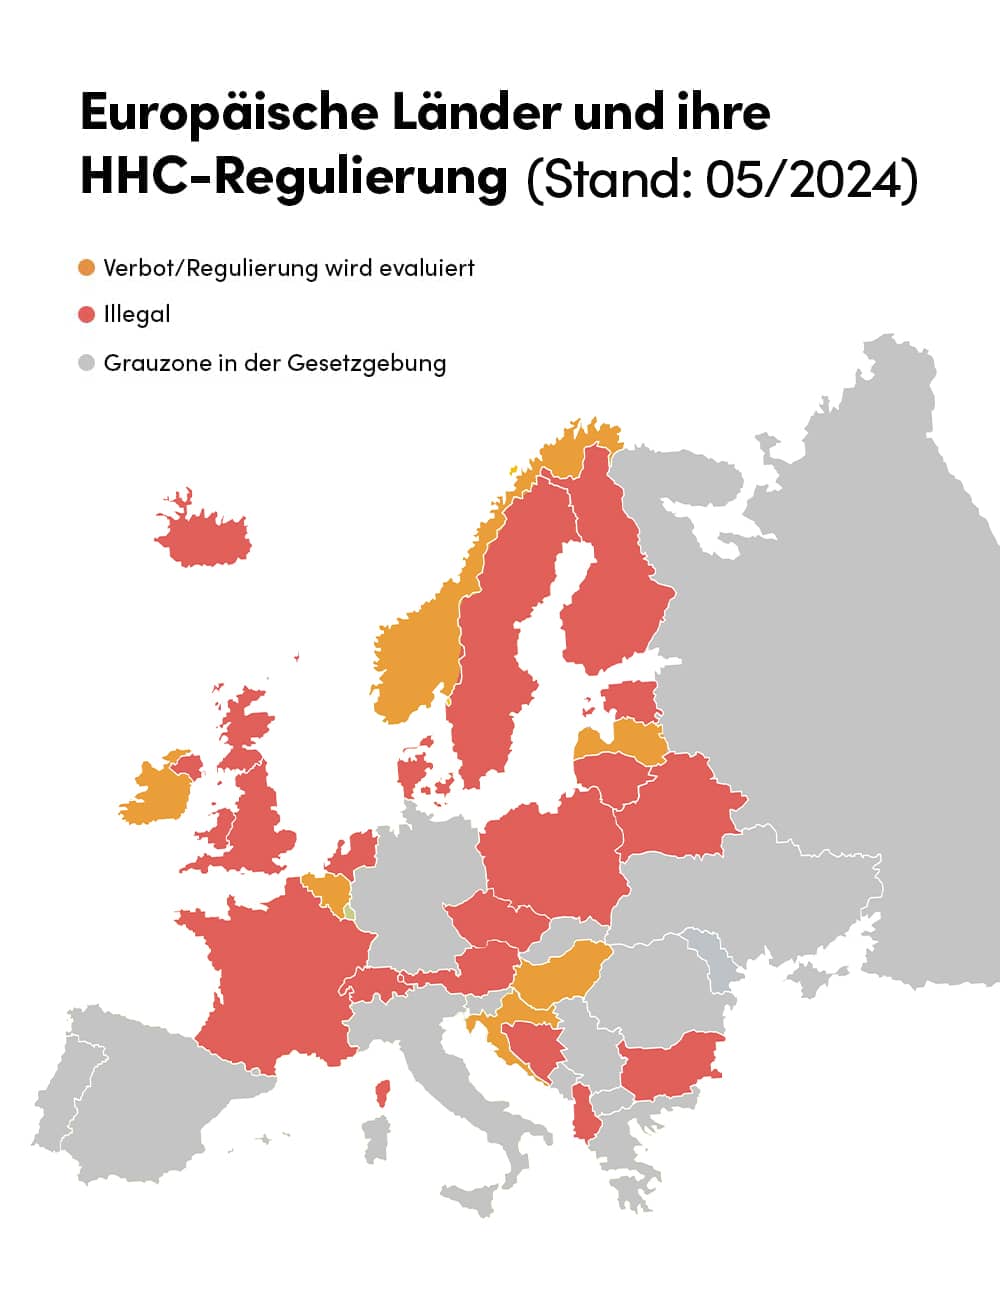 Übersicht europäischer Länder mit HHC-Verbot